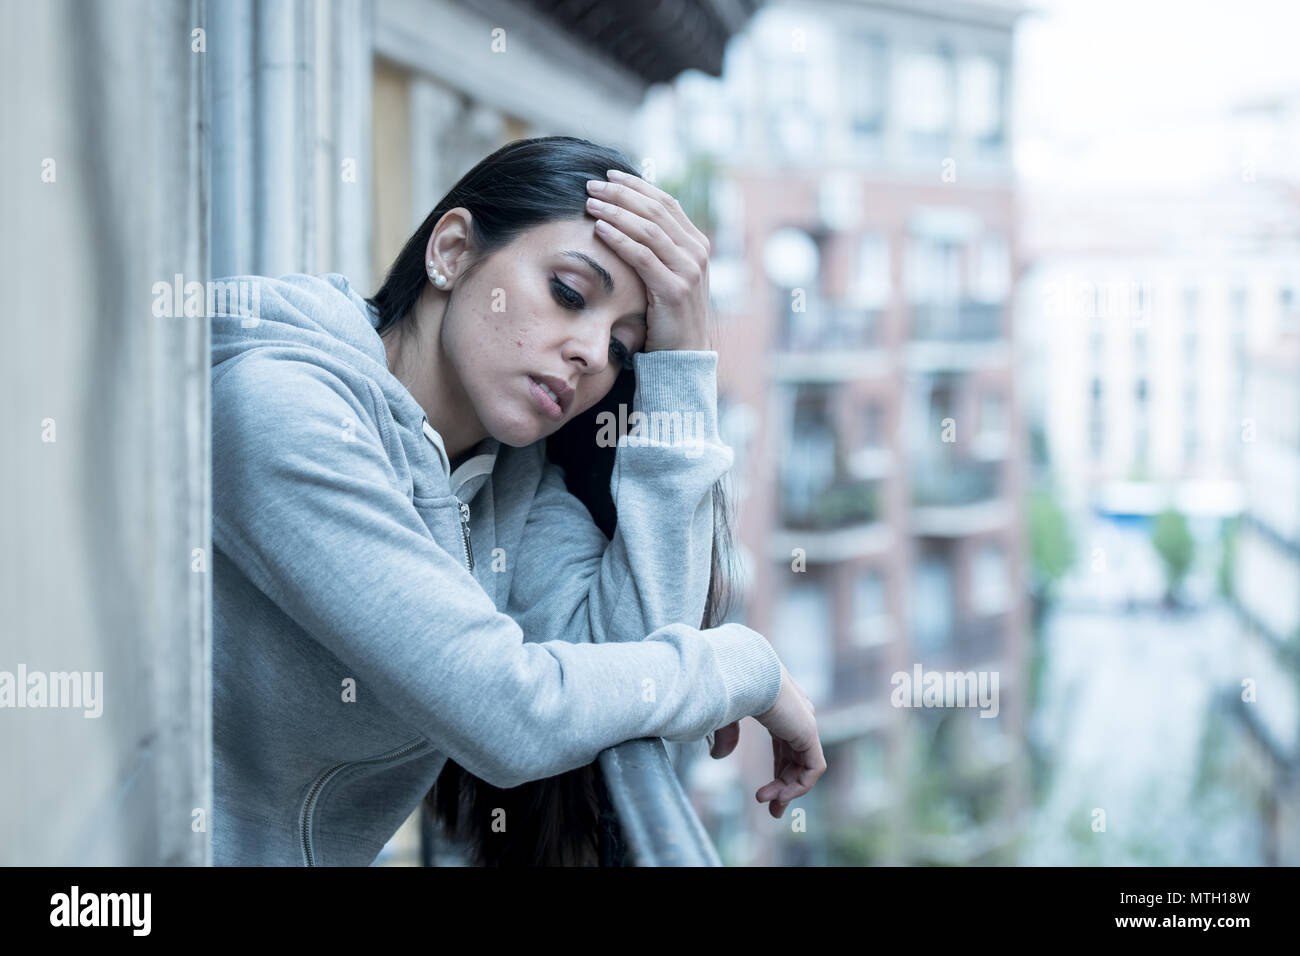 Schönen lateinischen gedrückt einsame Frau starrte traurig, Schmerz, Trauer, auf dem Balkon zu Hause. Krise, Depression und psychische Gesundheit Konzept Stockfoto